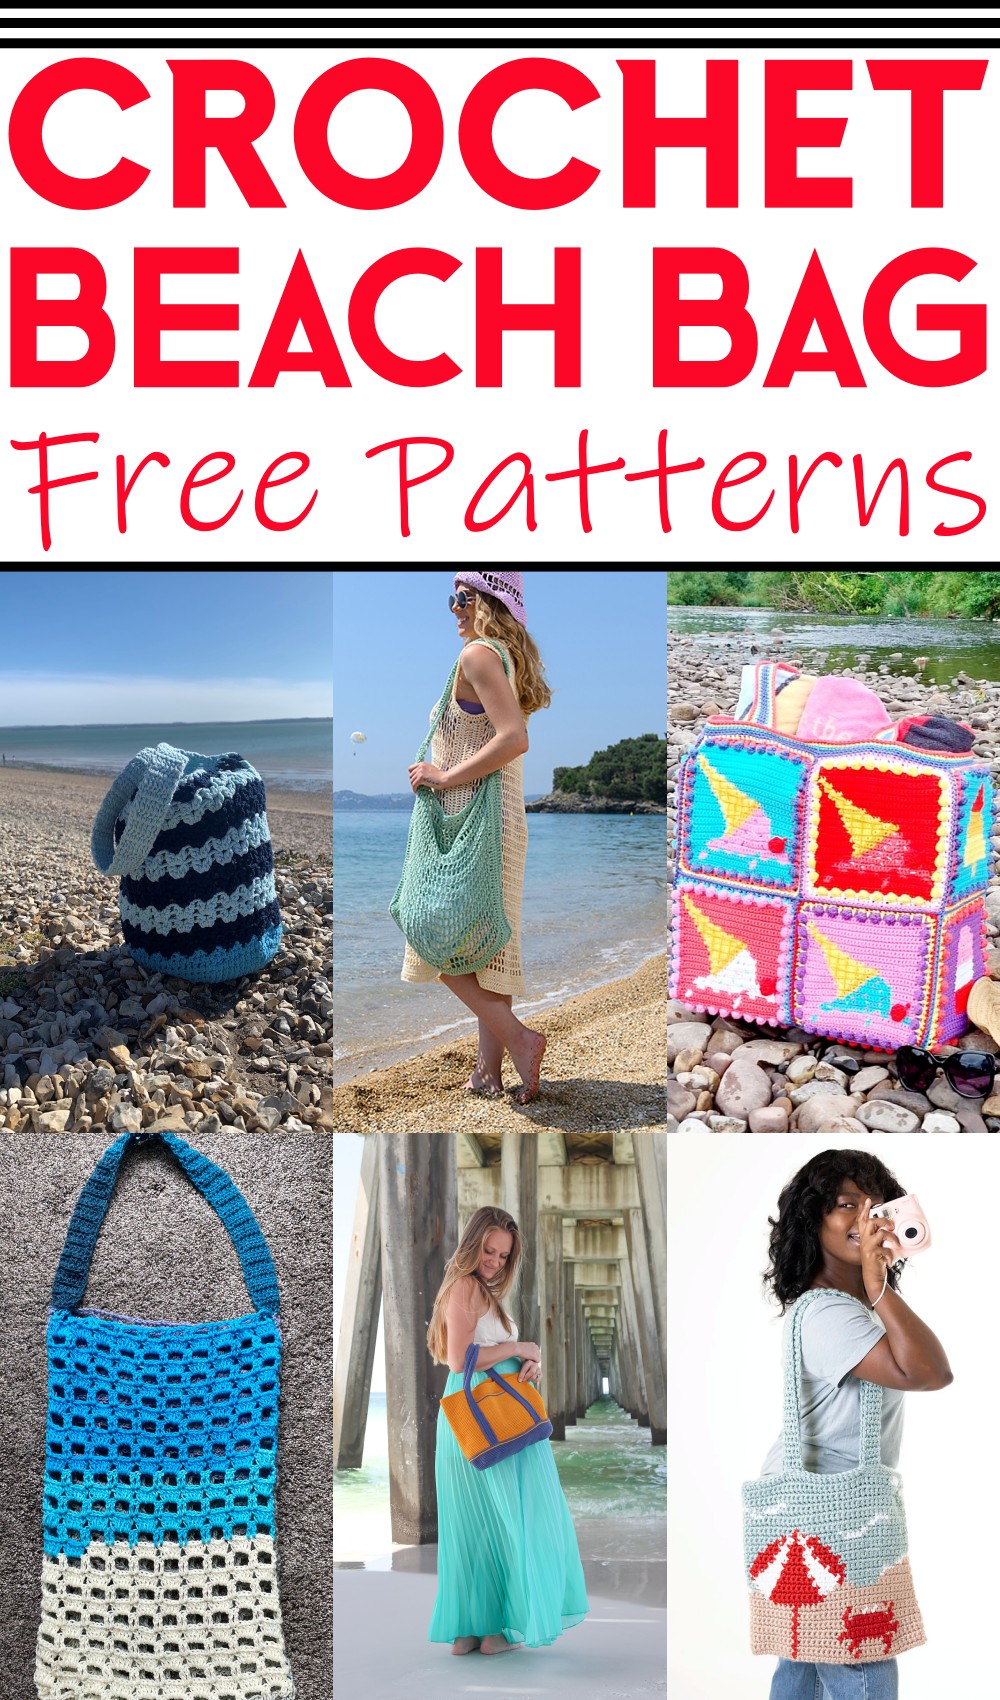 Crochet Beach Bag Patterns 1